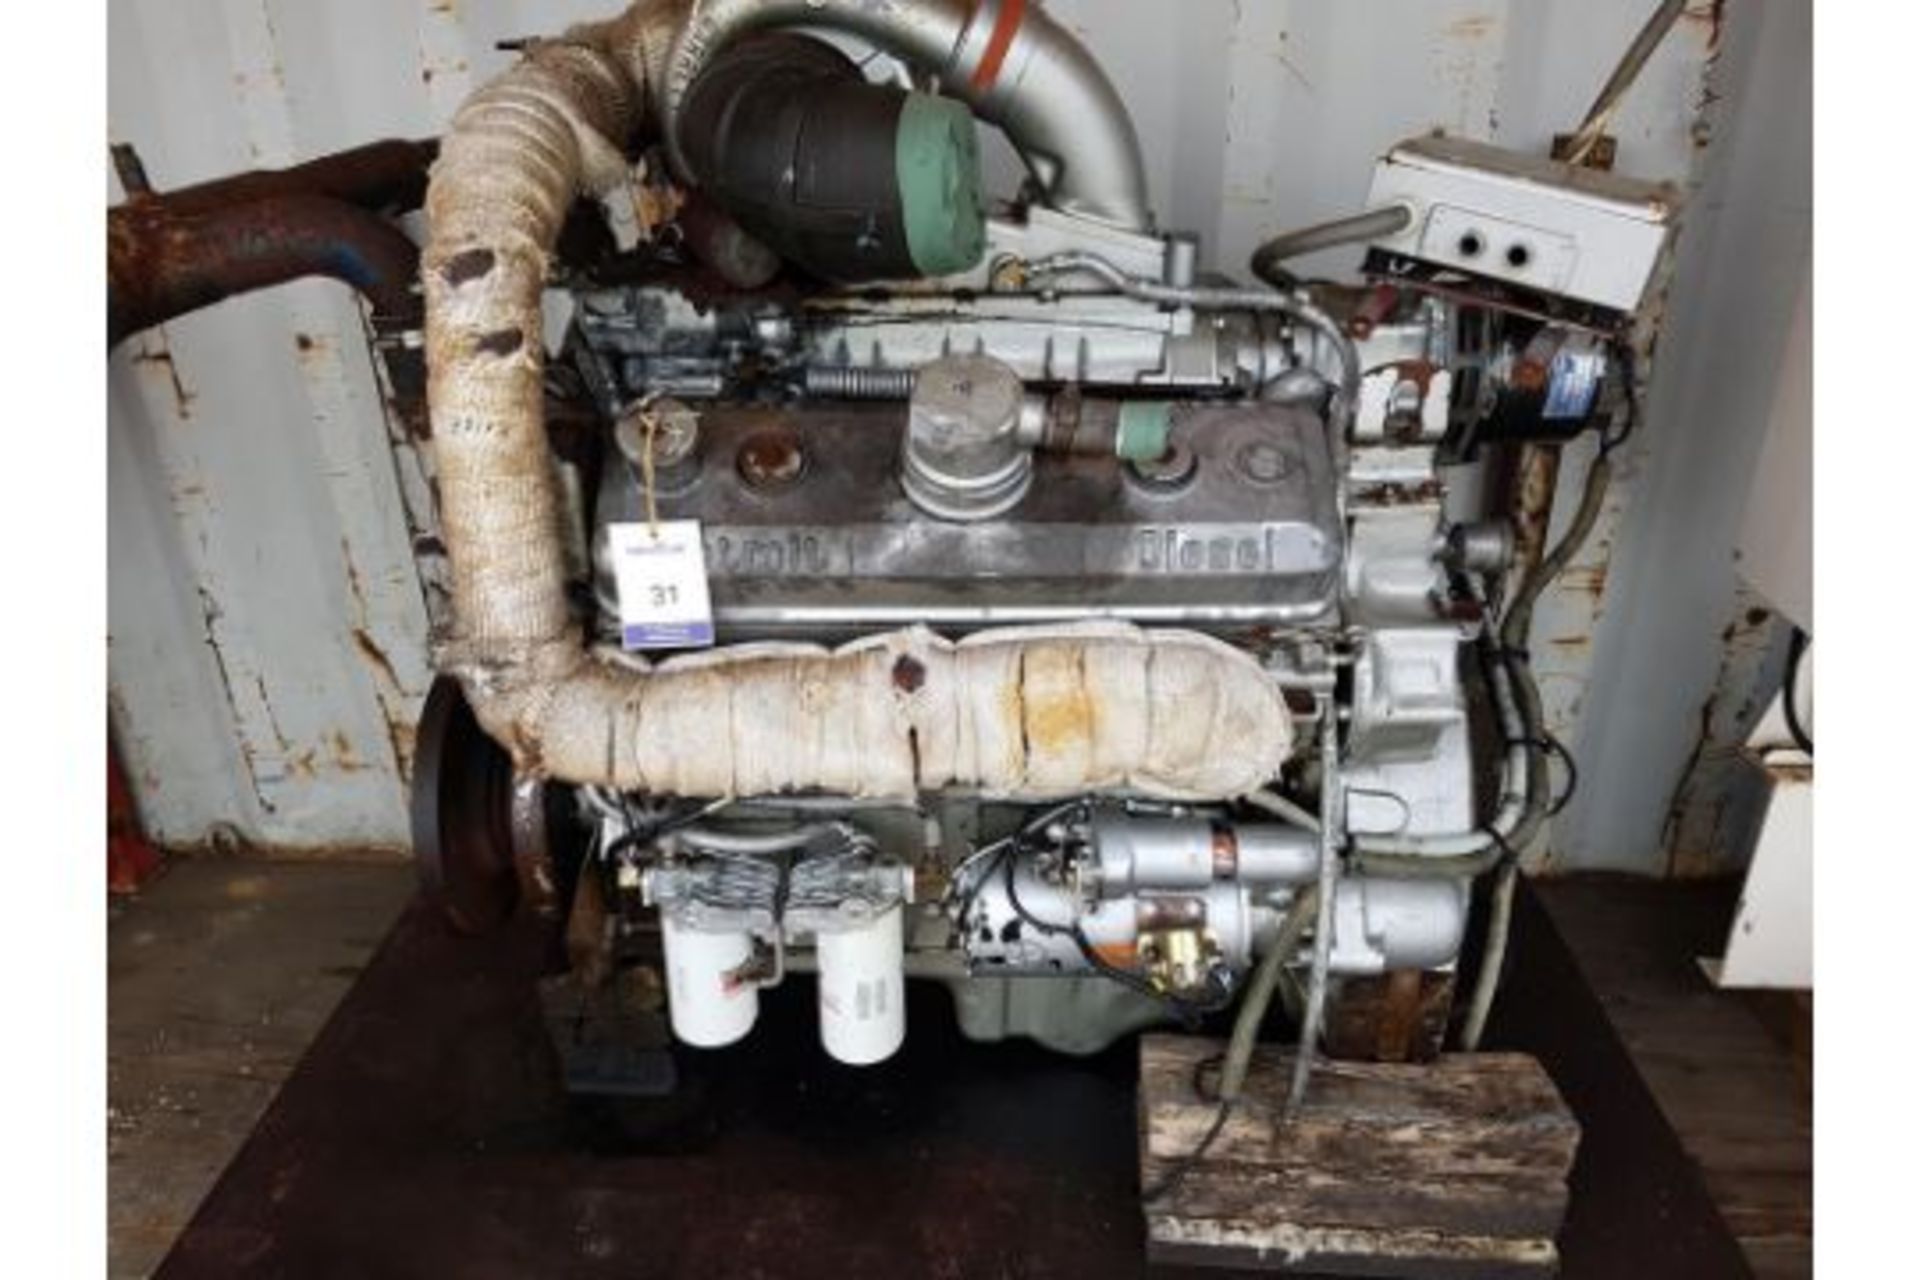 GM Detroit 8V92T Diesel Engine Ex Standby - Image 2 of 3